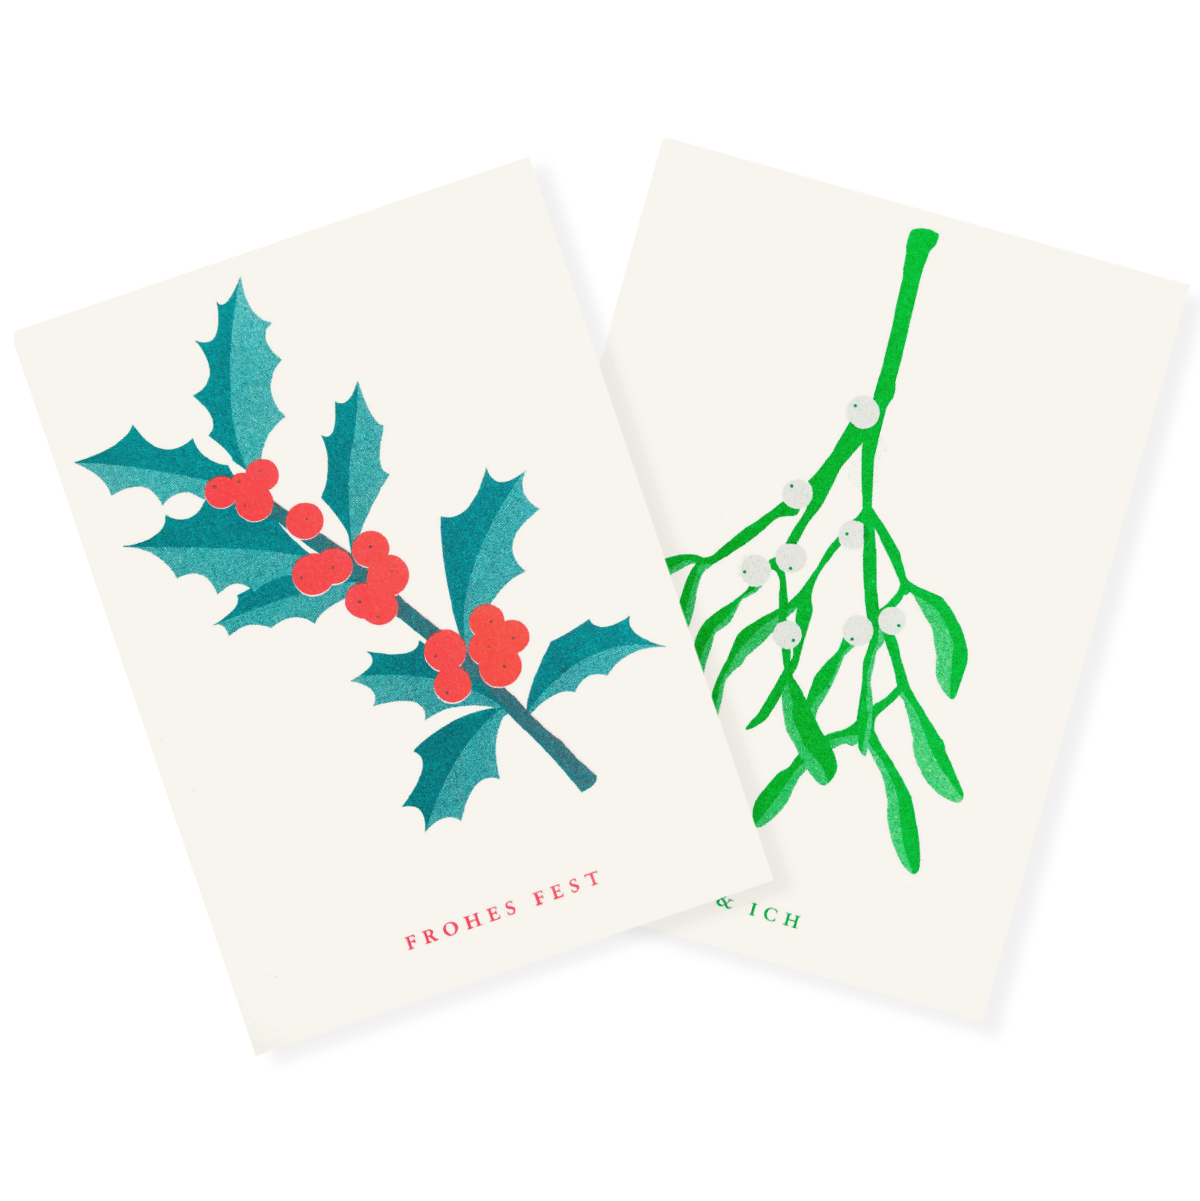 Mistelzweig und Stechpalme | Mistletoe and Holly | 2 Risograph Postcards by Herr und Frau Rio